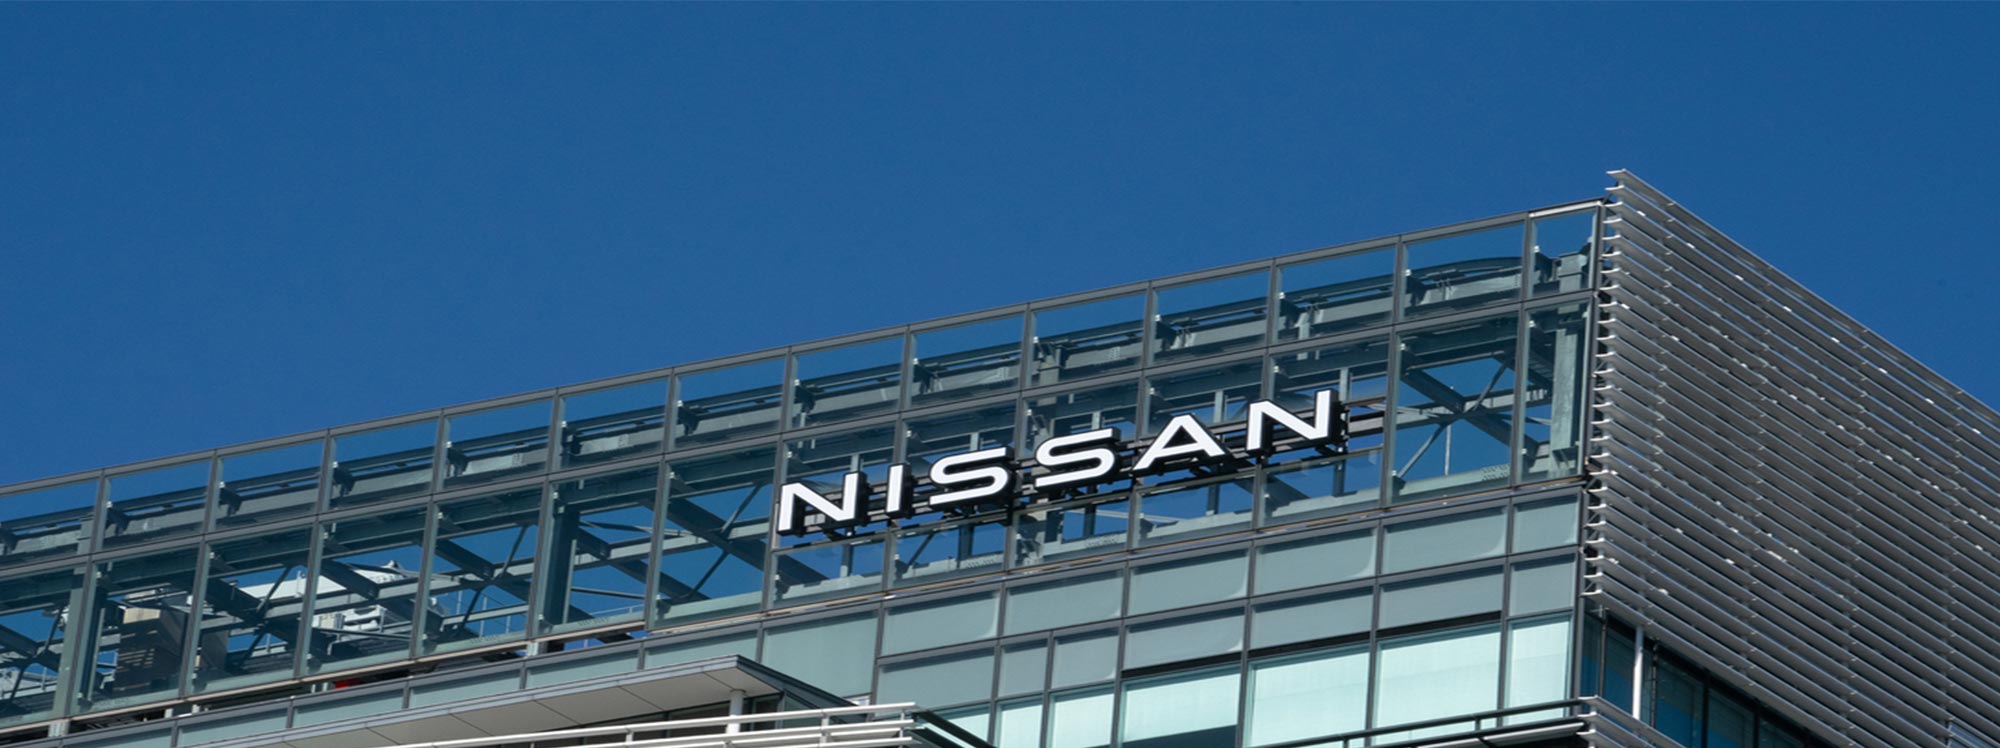 Nissan ofrece apoyo a la crisis humanitaria en Ucrania